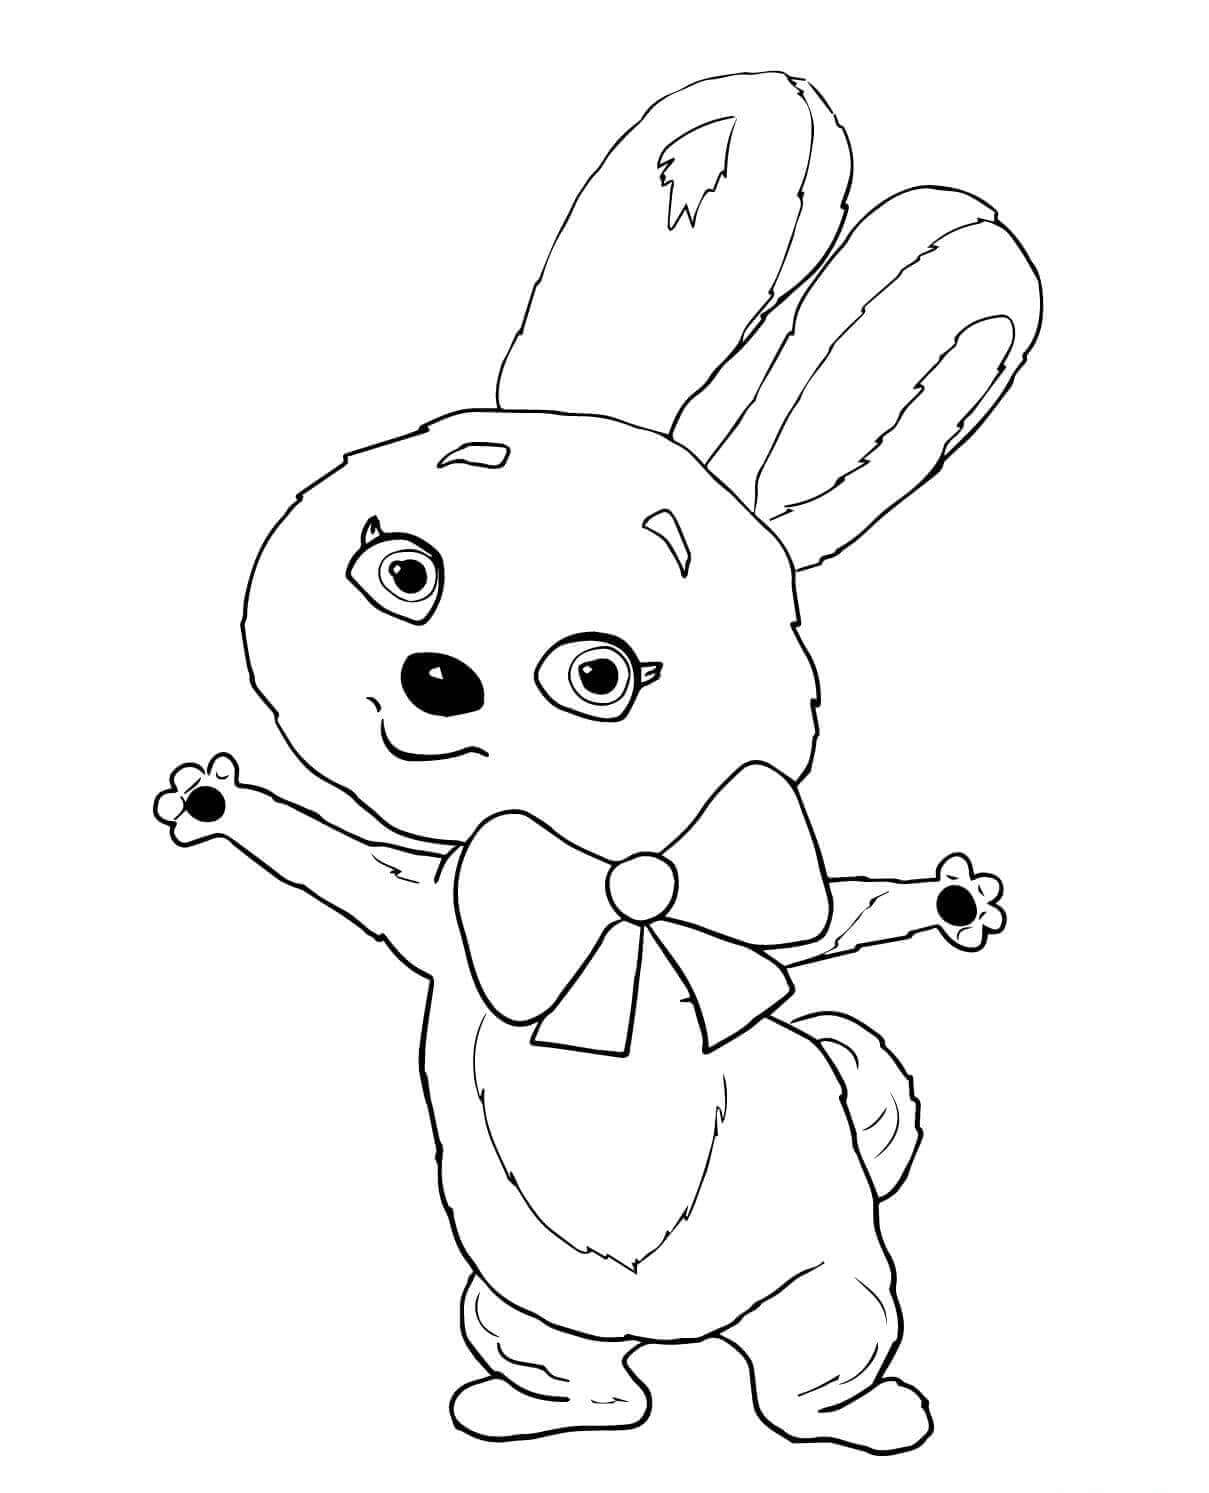 The Hare Sochi 2014 Mascot